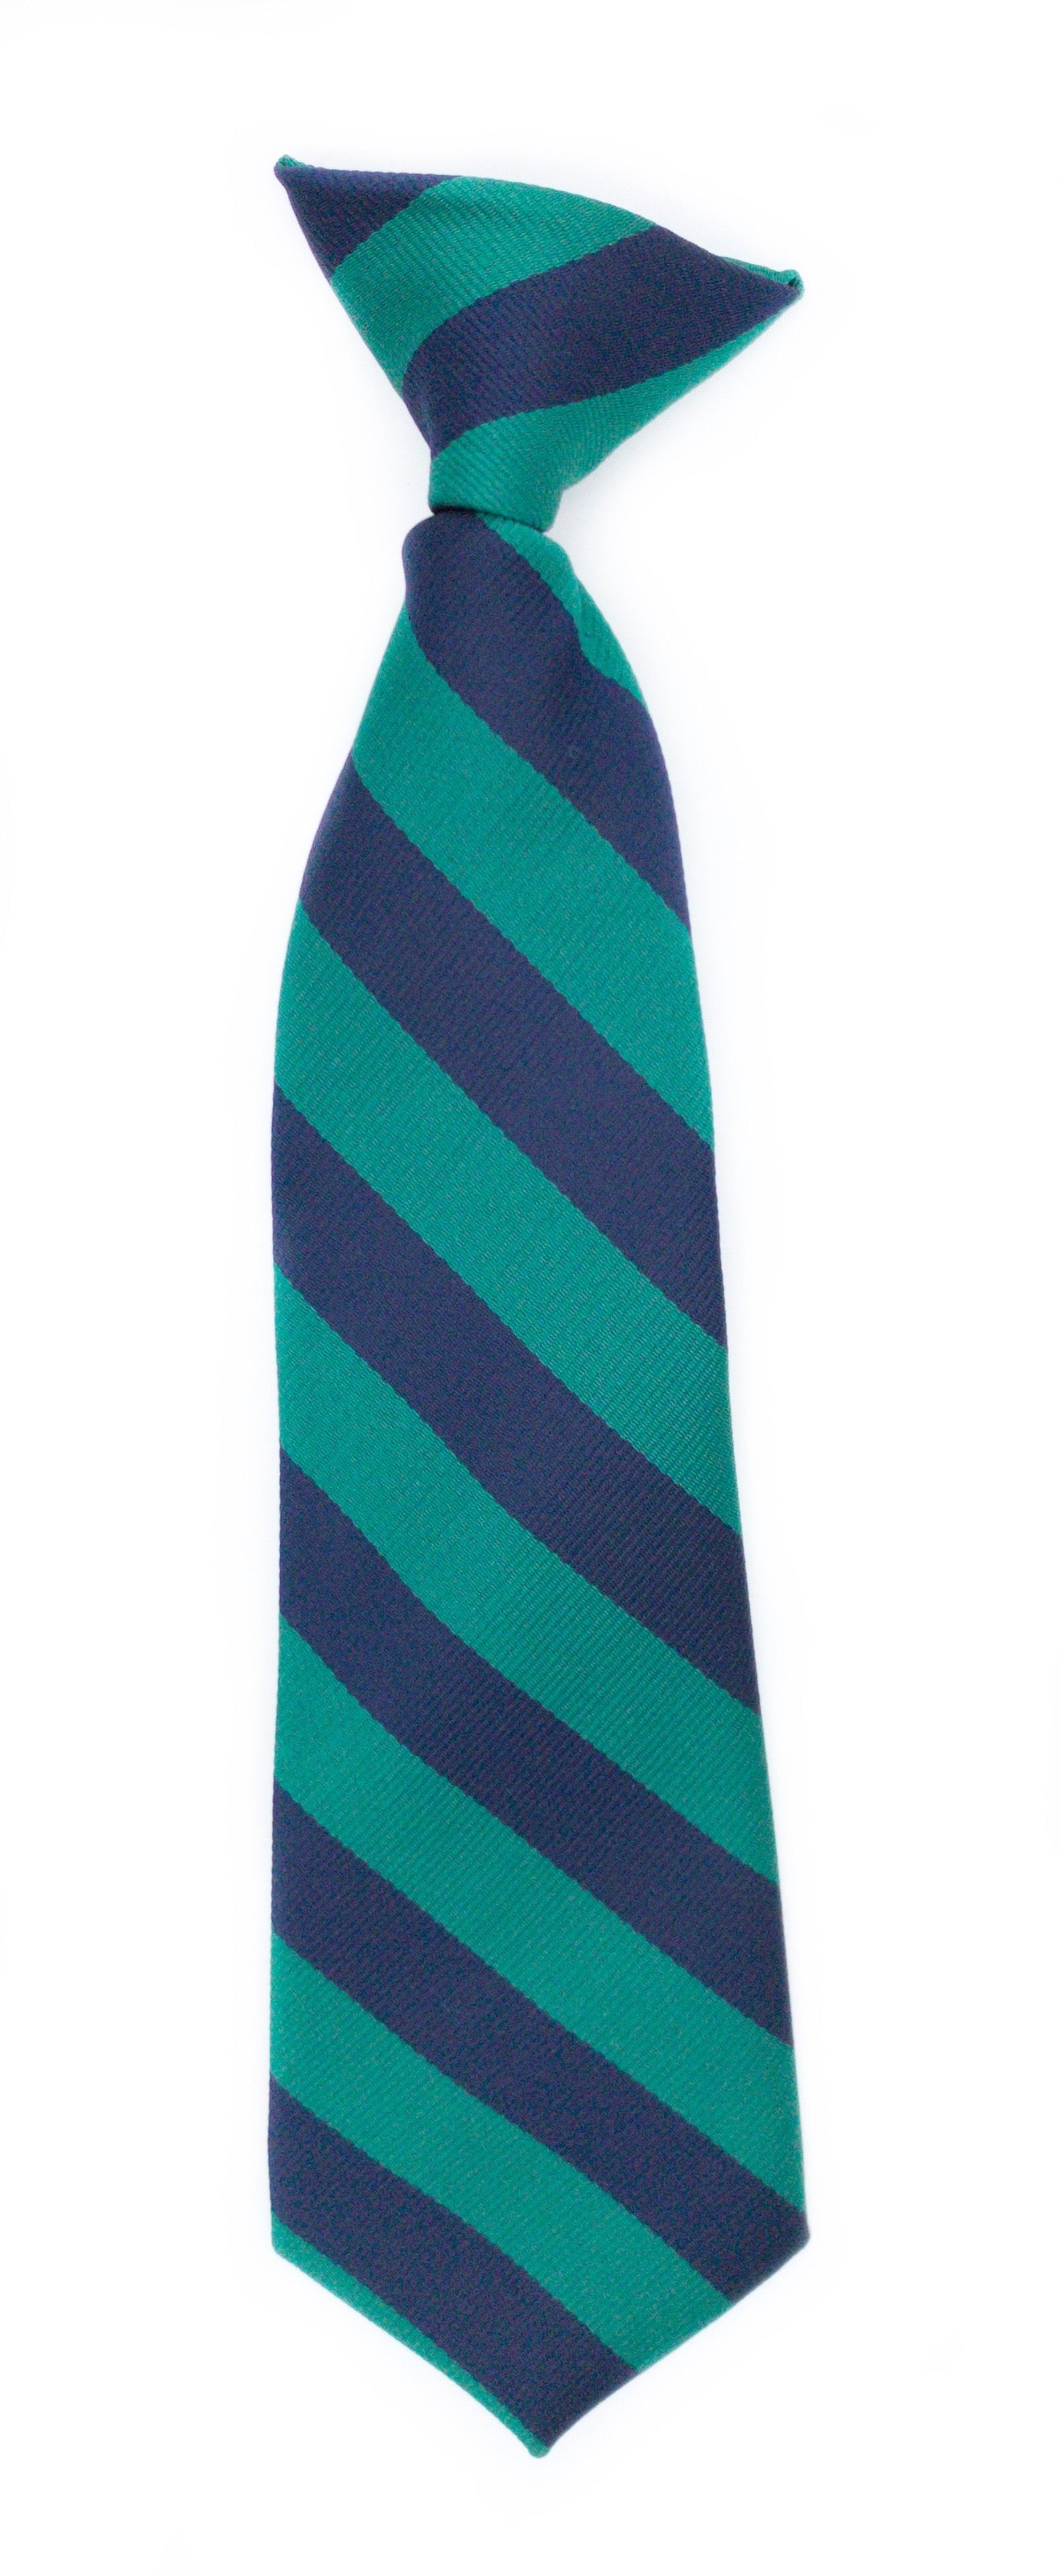 OHS tie/bow tie